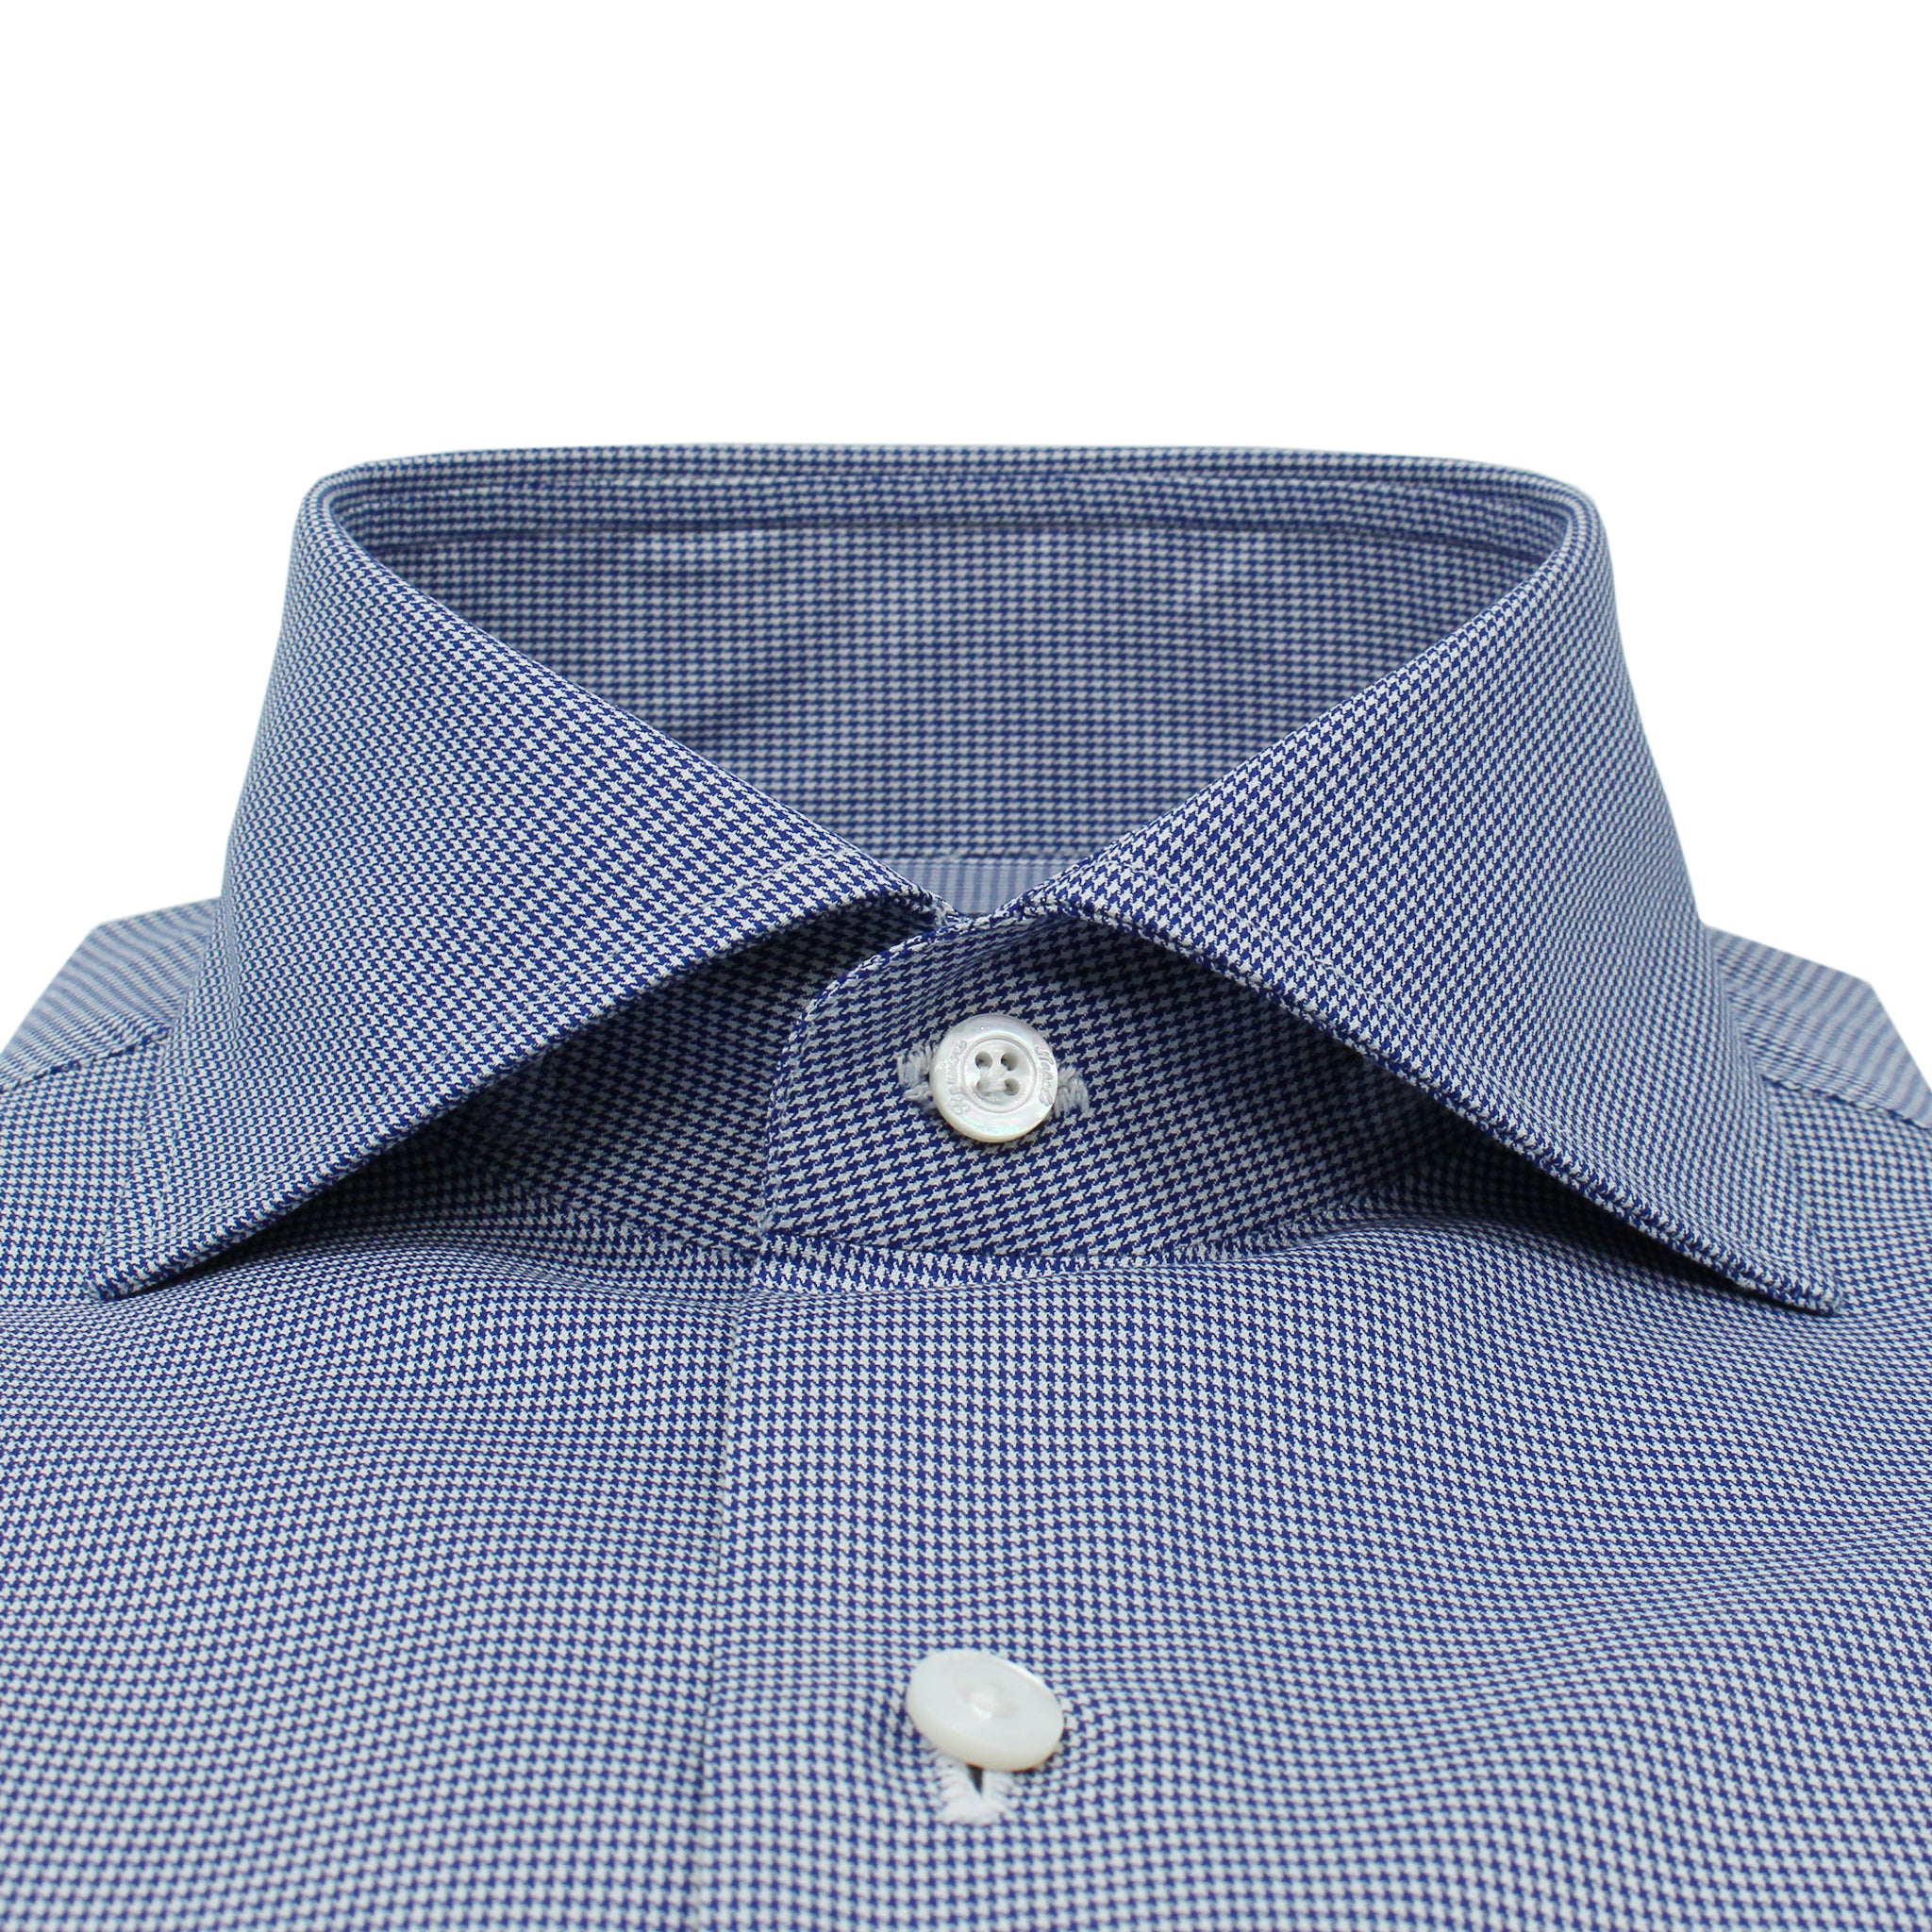 Naples classic blue pied de poule cotton shirt